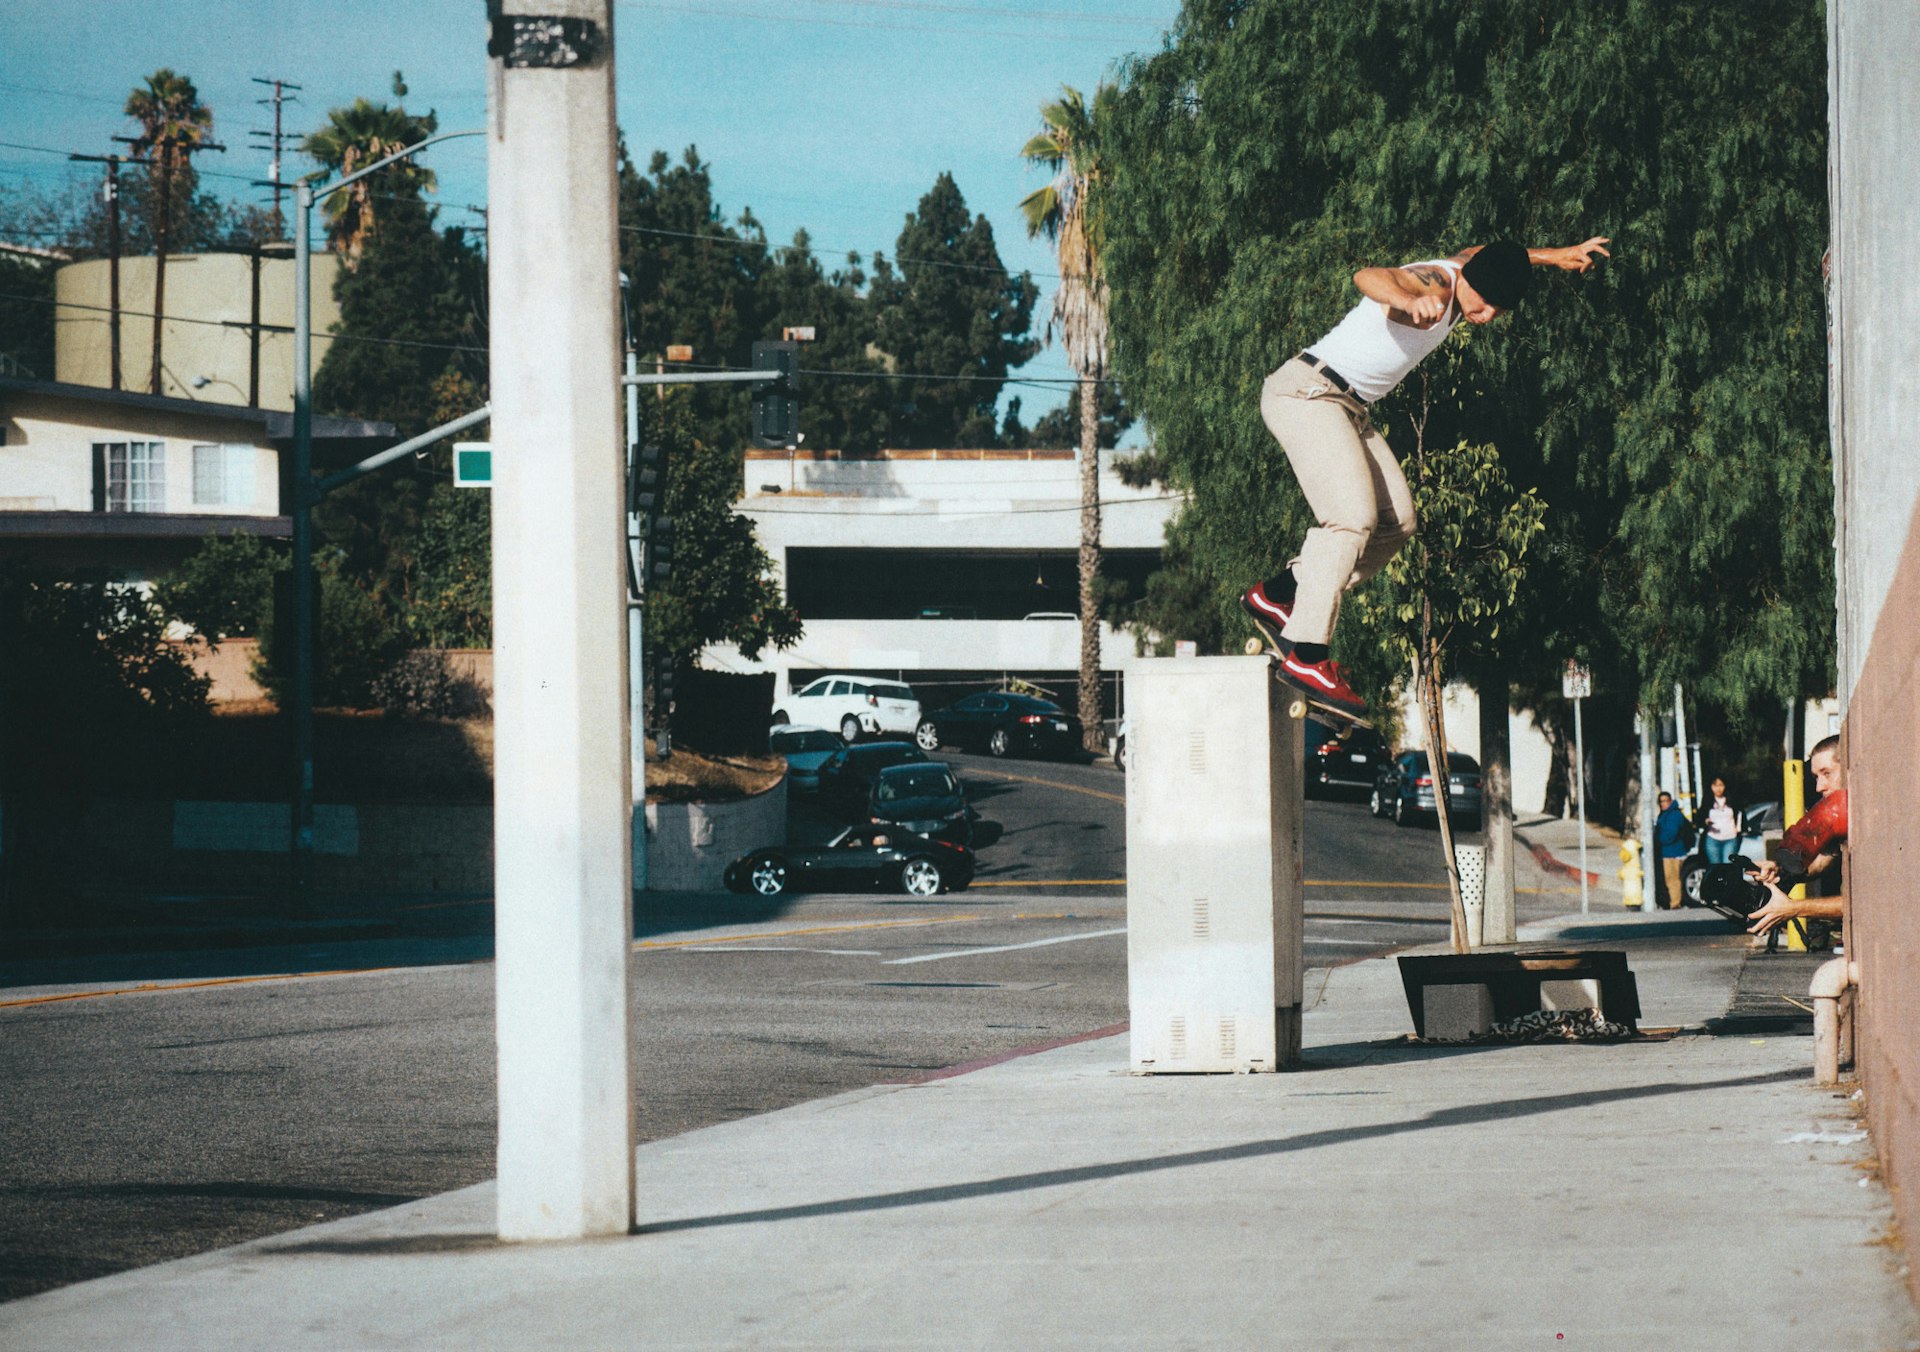 Elijah Berle is Santa Monica’s new skate hero